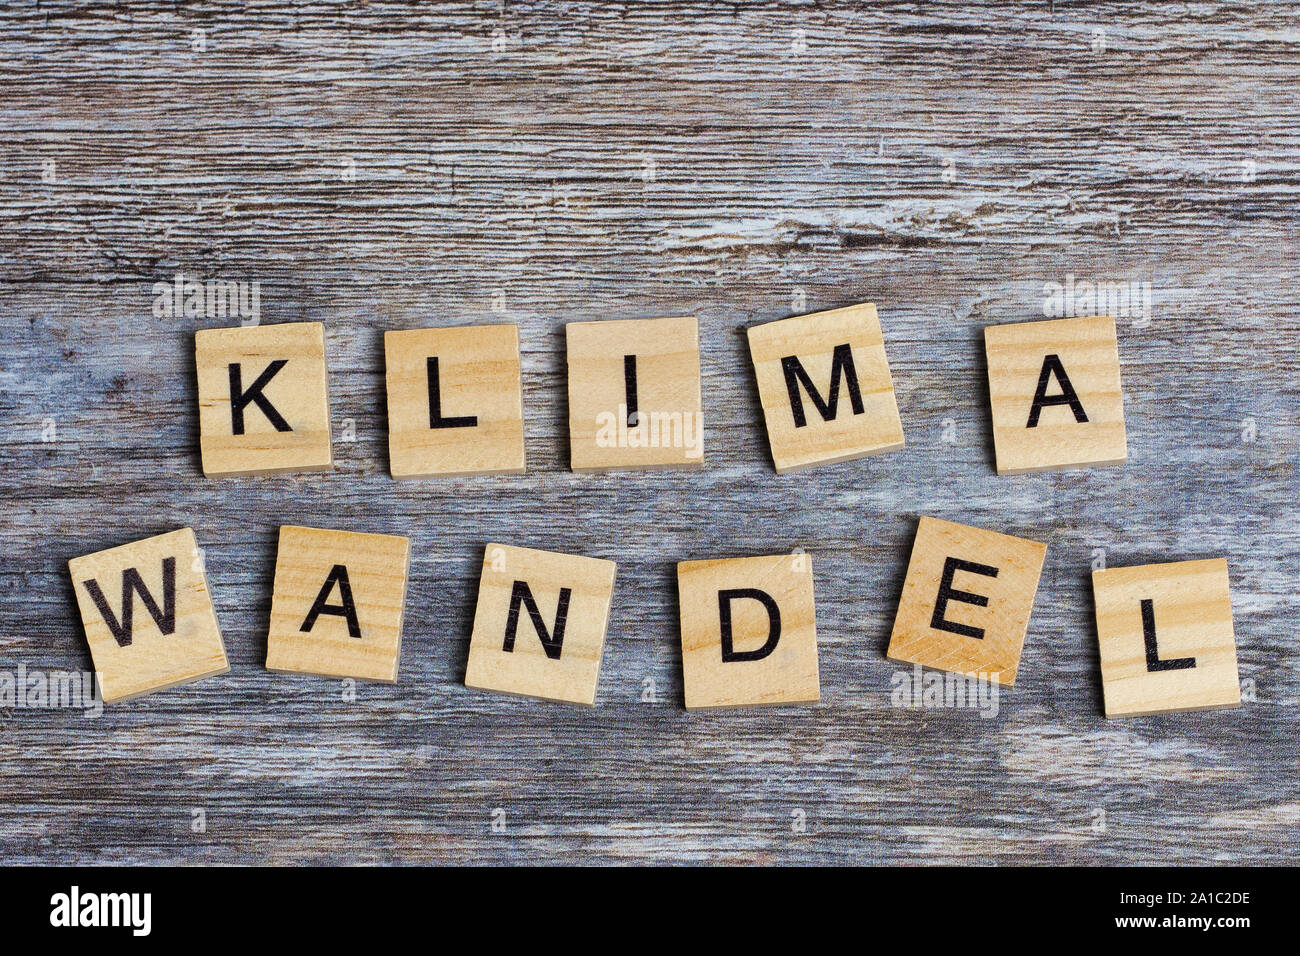 Le mot allemand signifie le changement climatique en anglais, portées avec des lettres majuscules sur fond de bois Banque D'Images